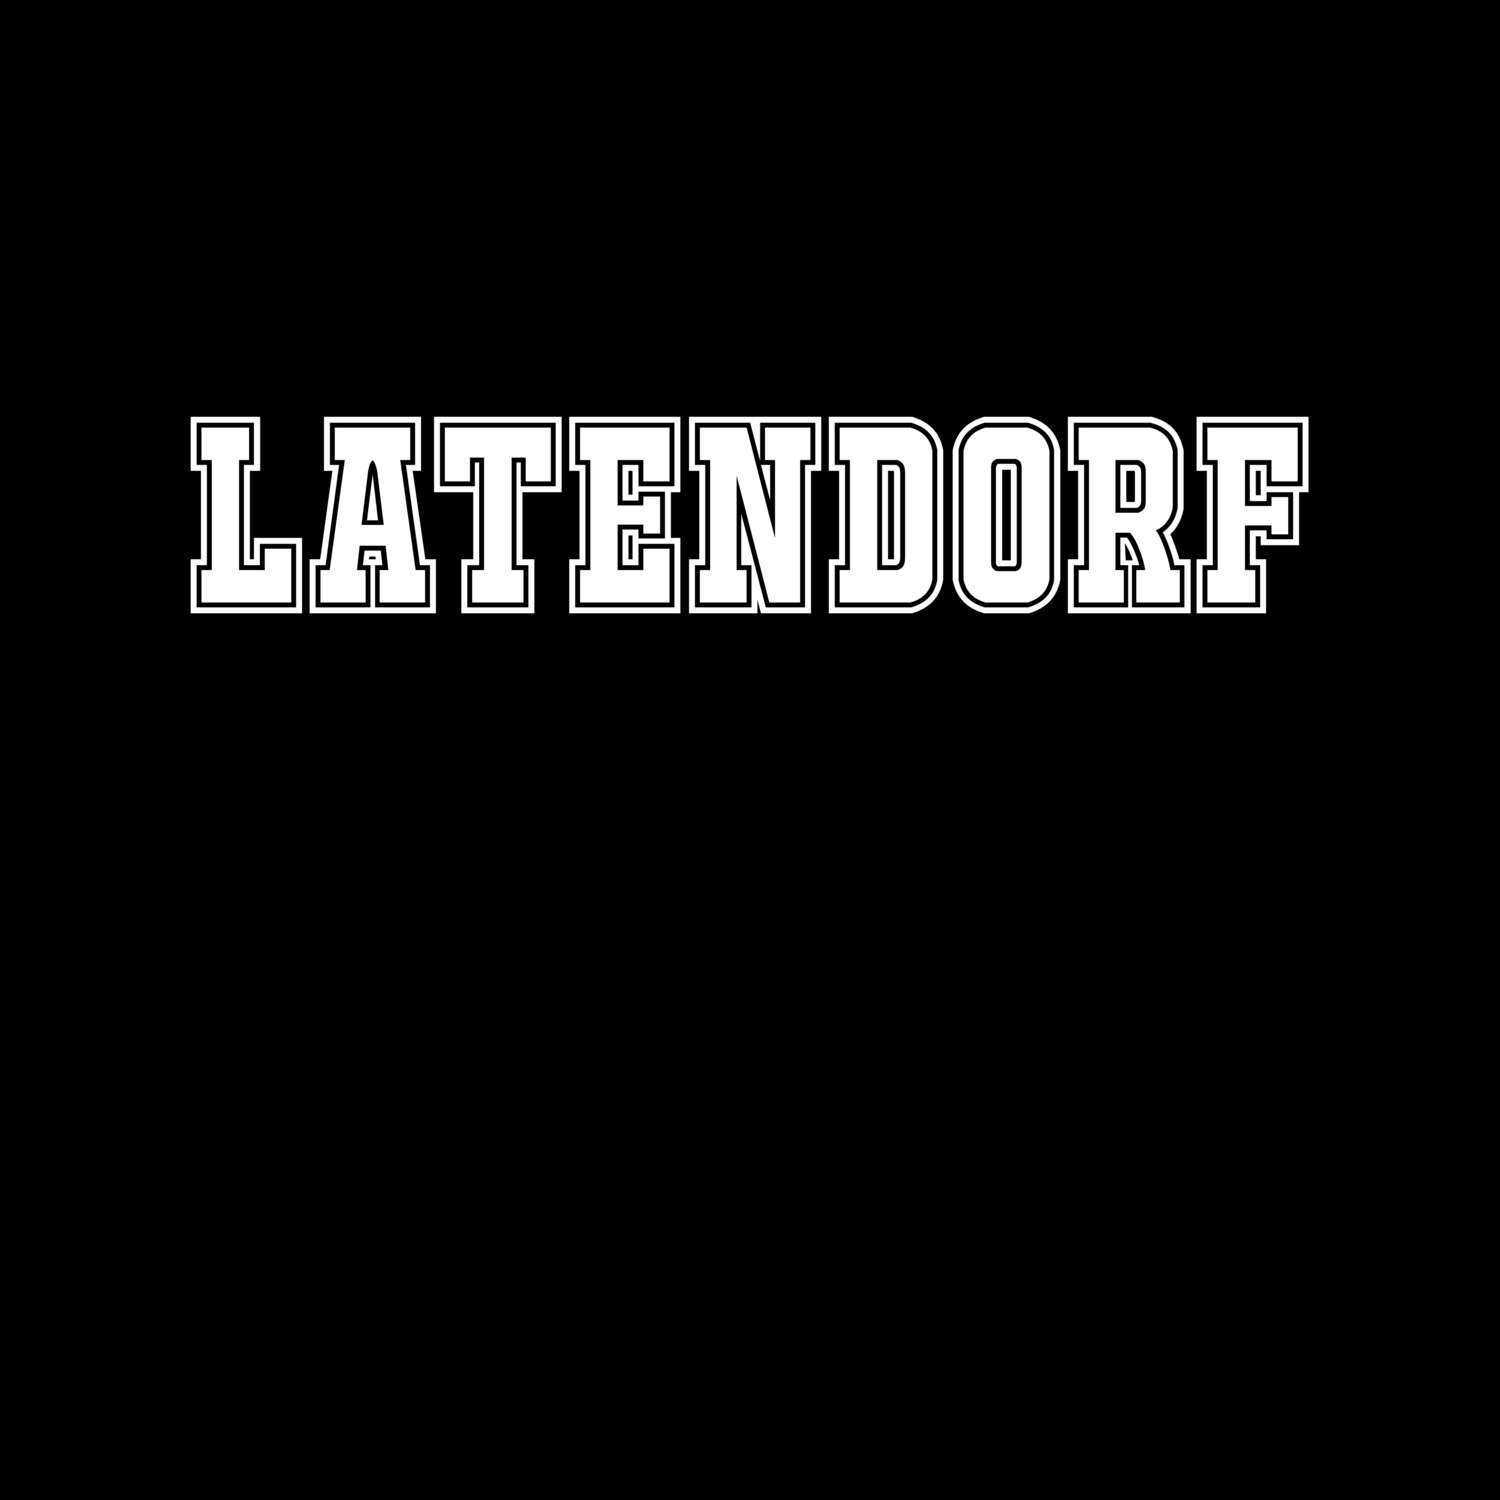 Latendorf T-Shirt »Classic«